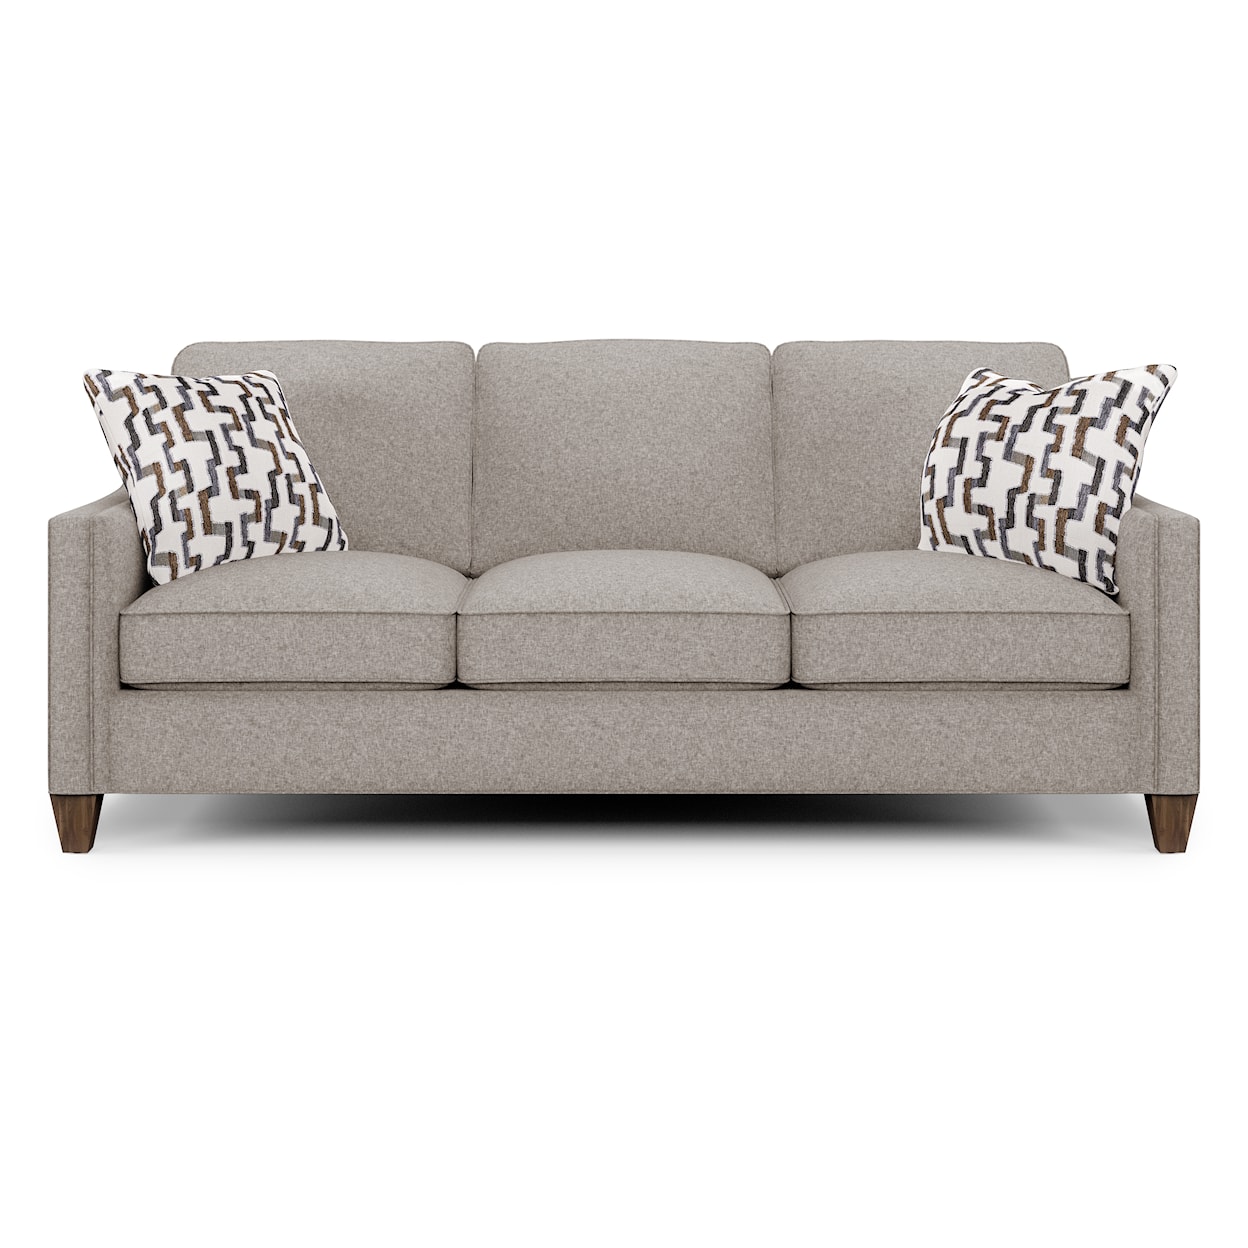 Flexsteel Finley Contemporary Sofa